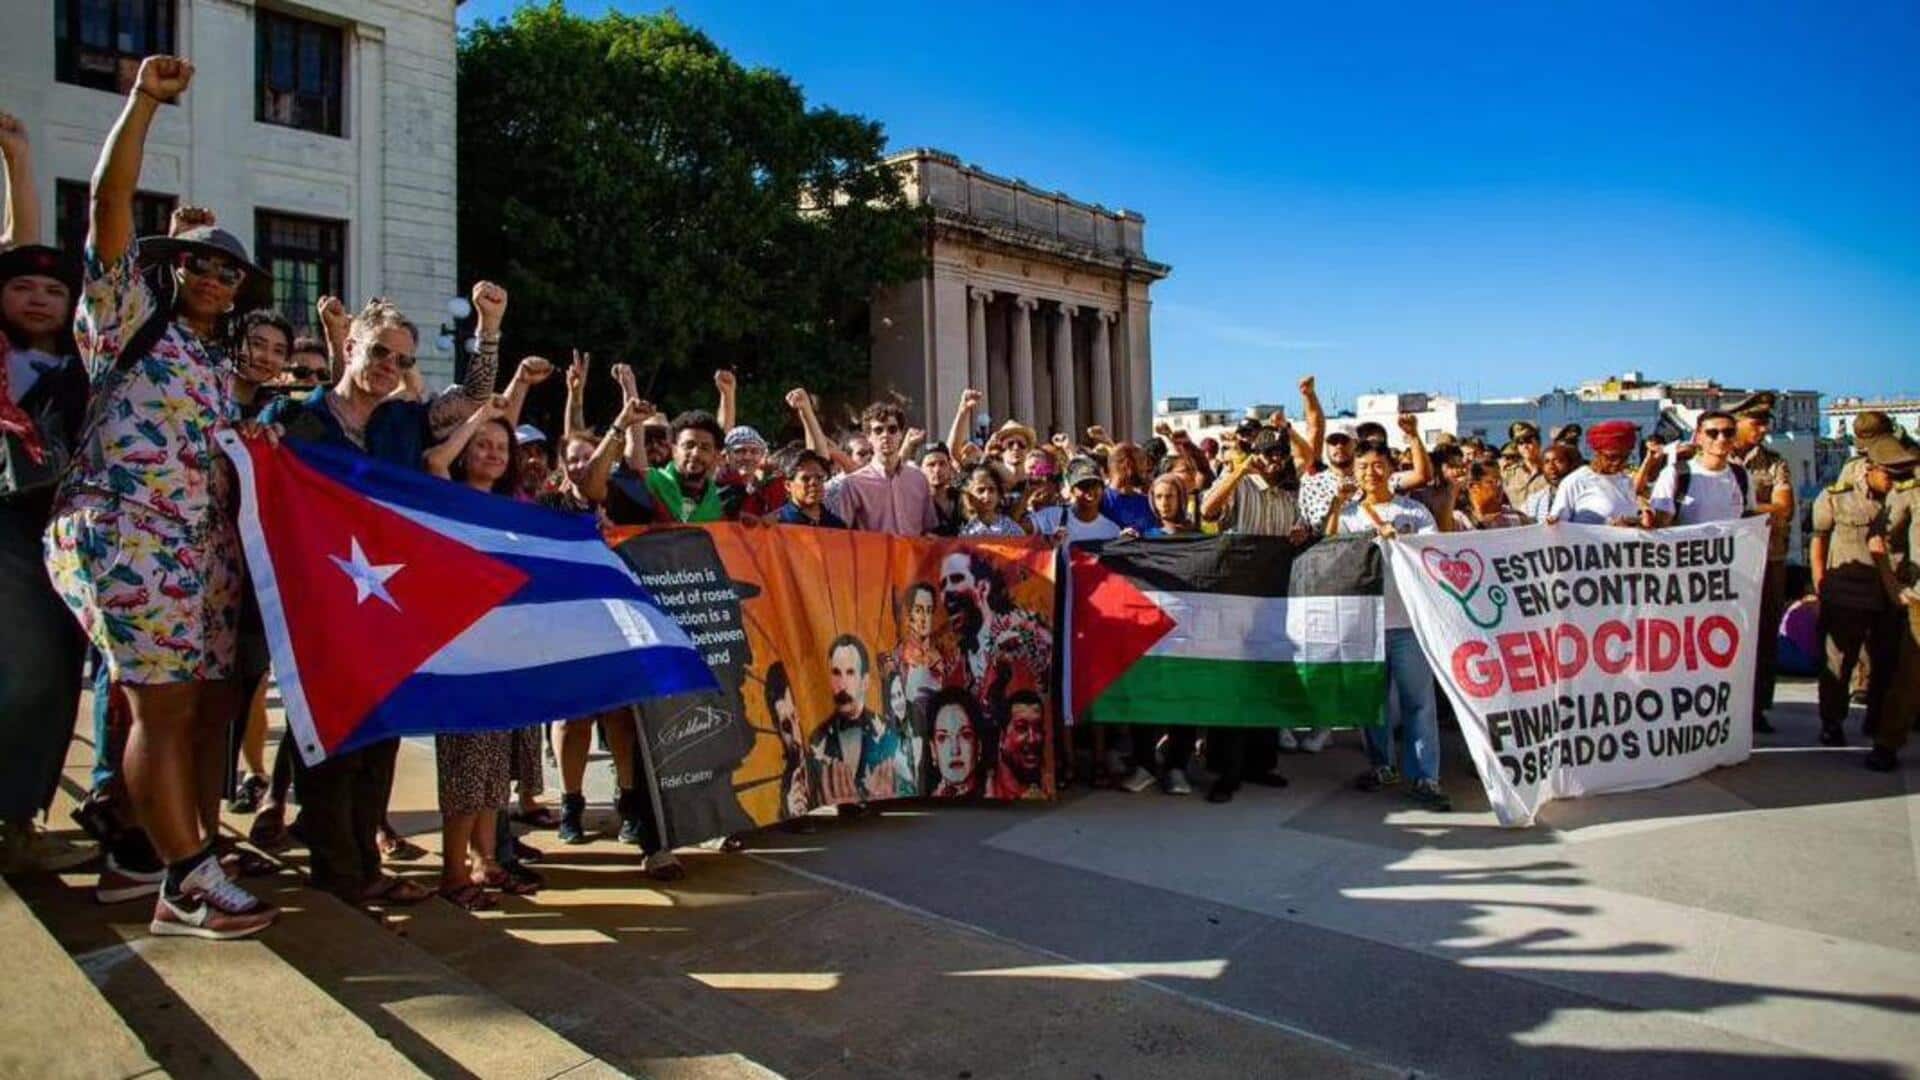 अमेरिका के बाद दुनियाभर के विश्वविद्यालयों में फैला फिलिस्तीन समर्थक विरोध-प्रदर्शन, फ्रांस से ऑस्ट्रेलिया तक असर